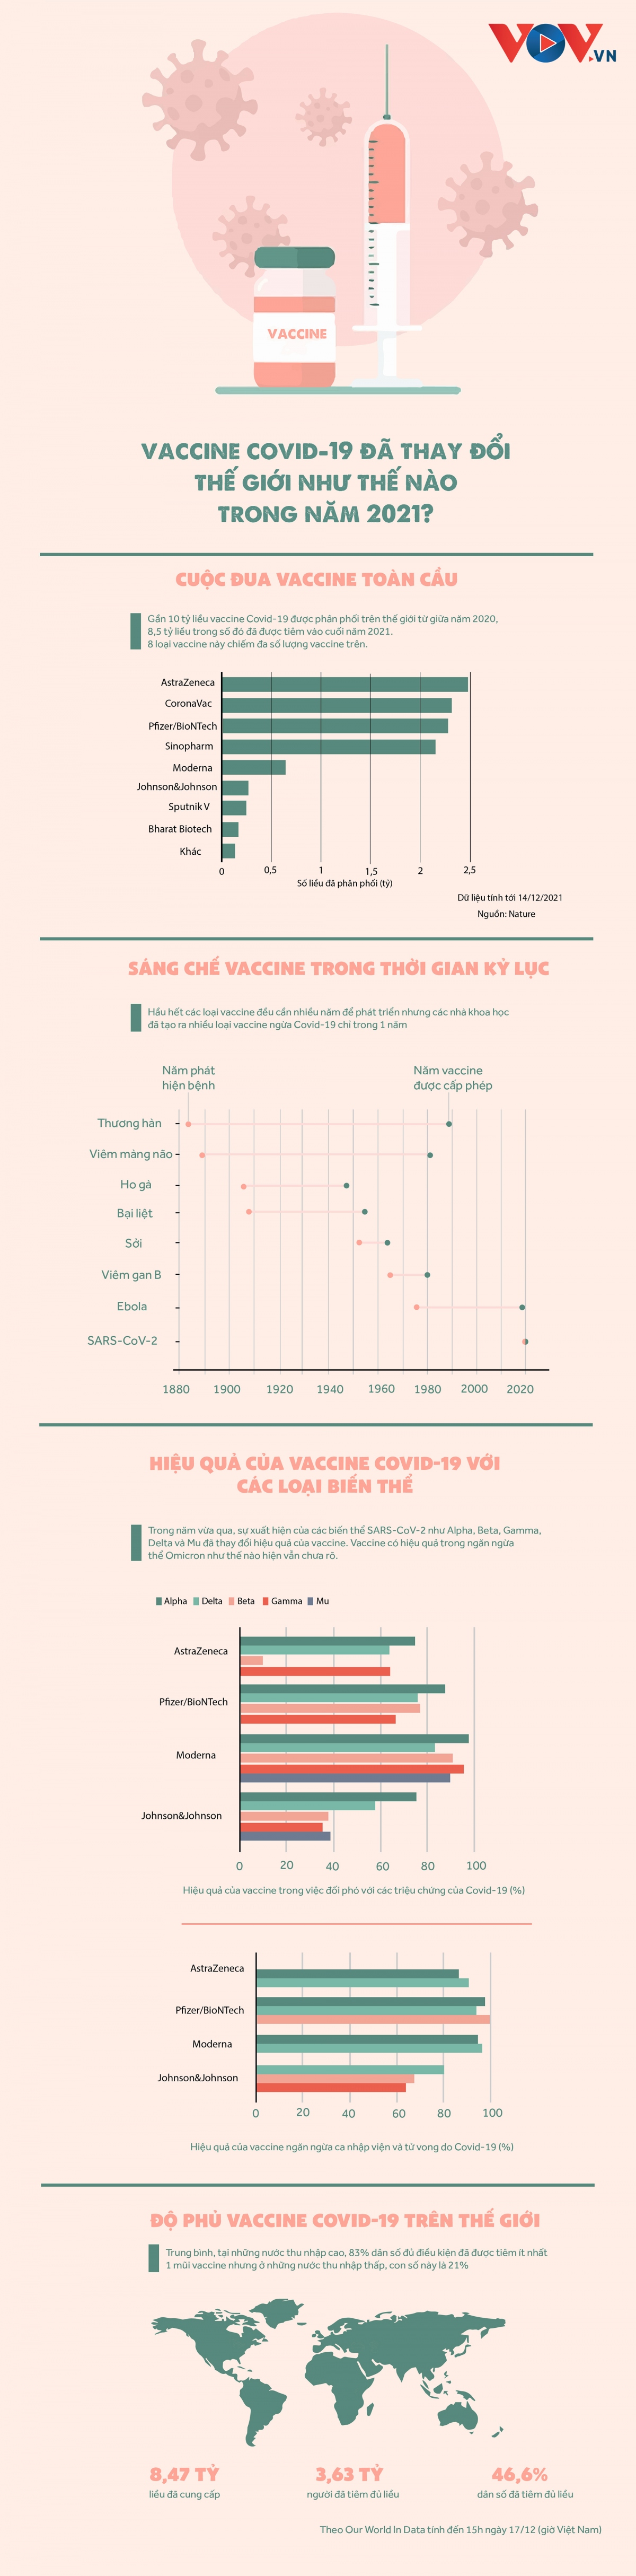 vaccine covid-19 da thay doi the gioi the nao trong nam 2021 hinh anh 1